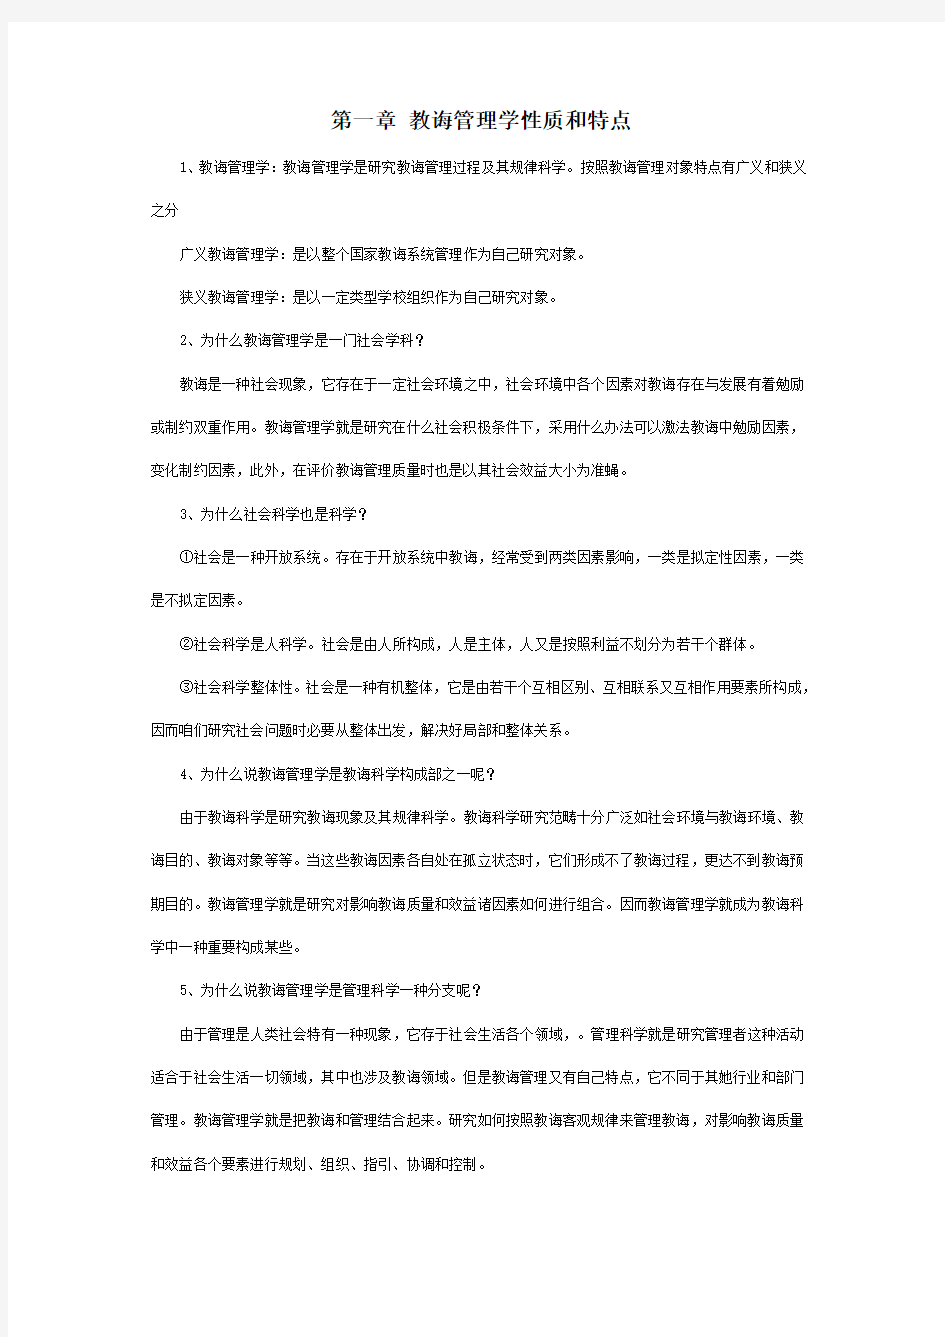 陈孝彬的教育管理学笔记样本